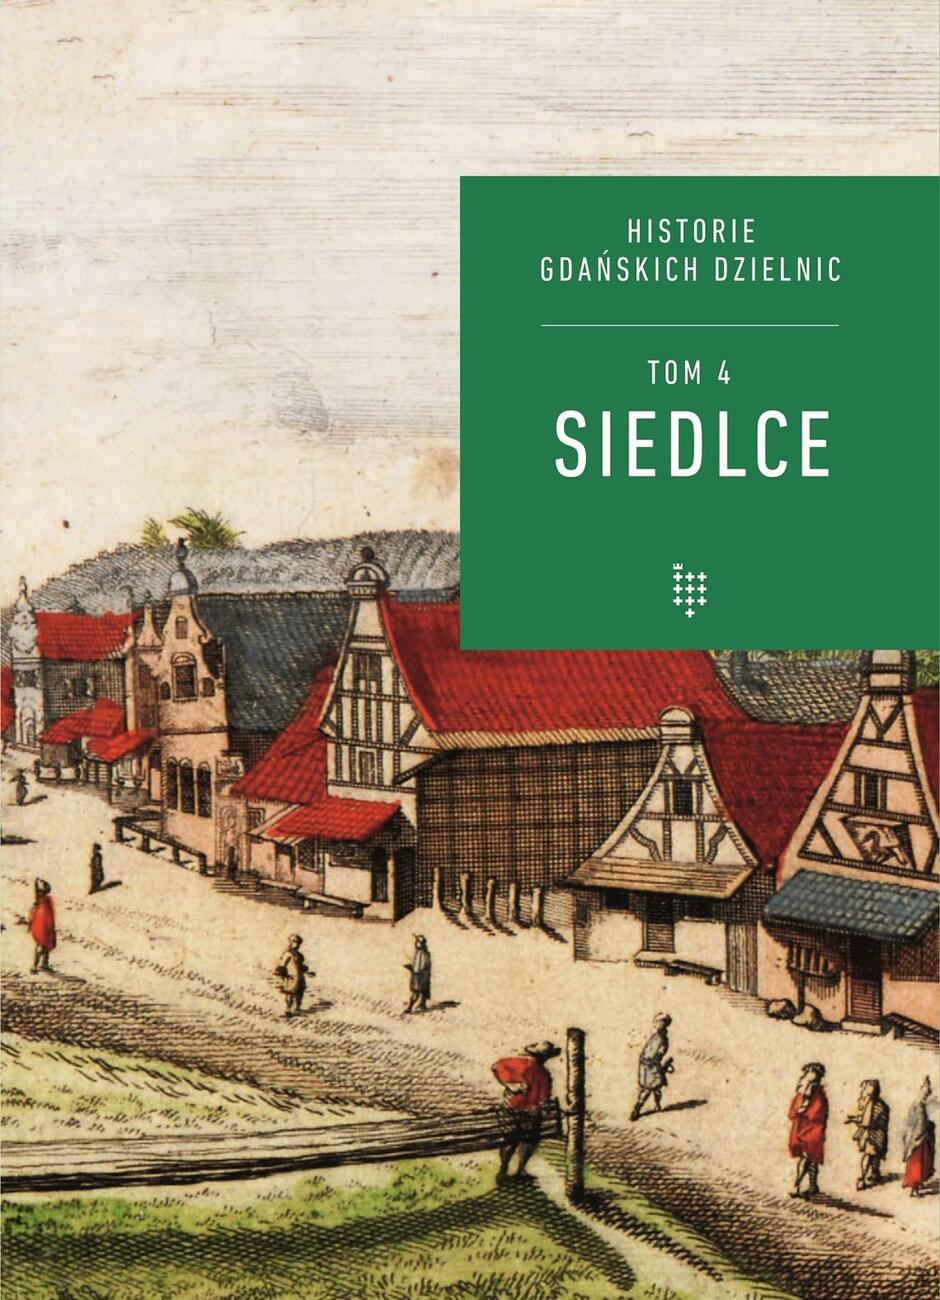 Okładka czwartego tomu wydawanej od kilku lat przez Muzeum Gdańska serii „historie gdańskich dzielnic” poświęconej Siedlcom